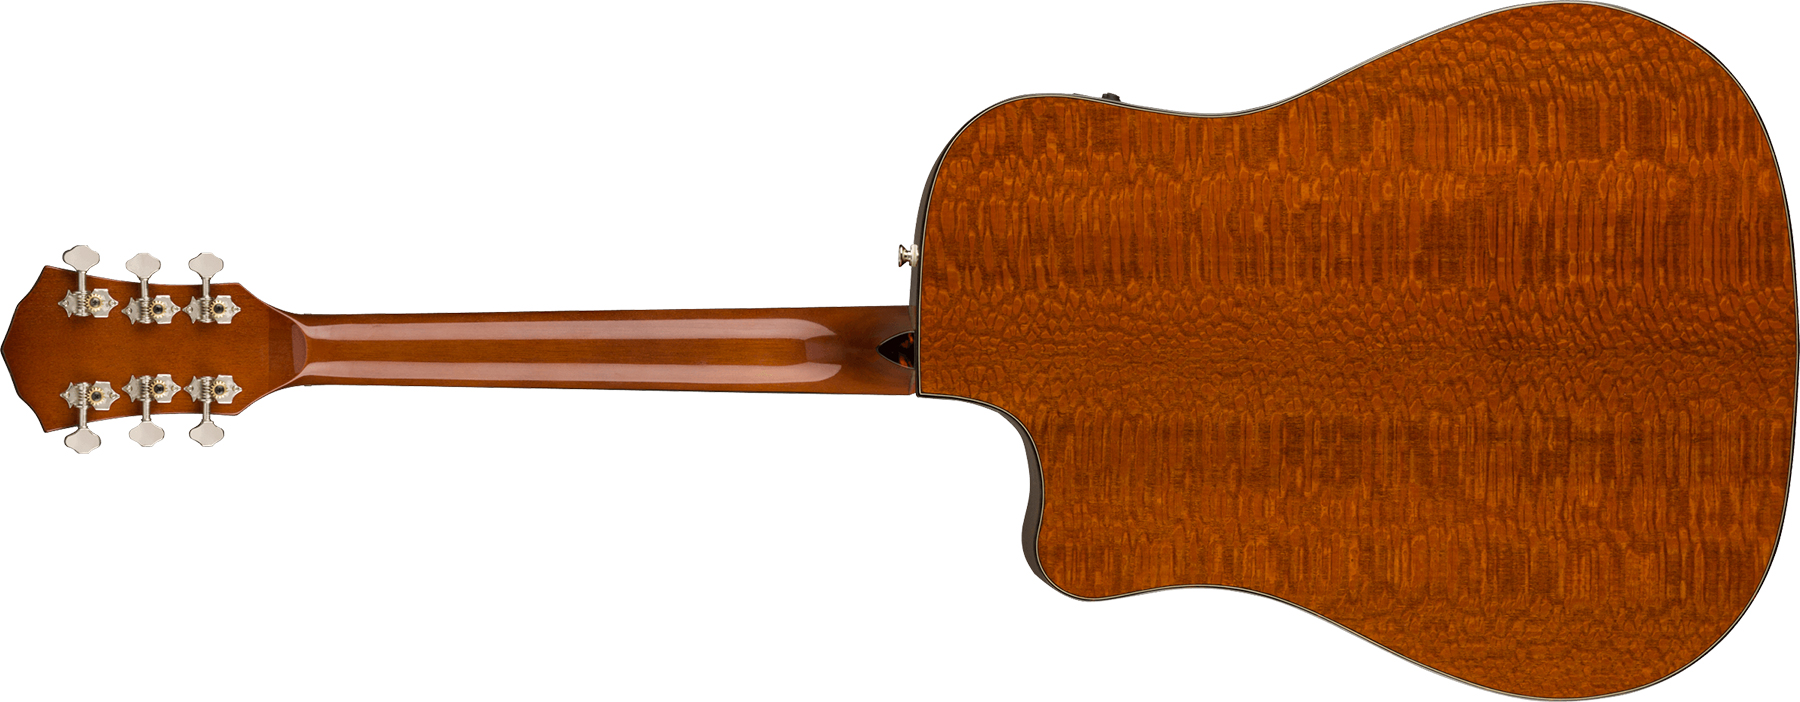 Fender Fa325ce Ltd Dreadnought Cw Erable Lacewood Lau - Moonlight Burst - Electro acoustic guitar - Variation 1